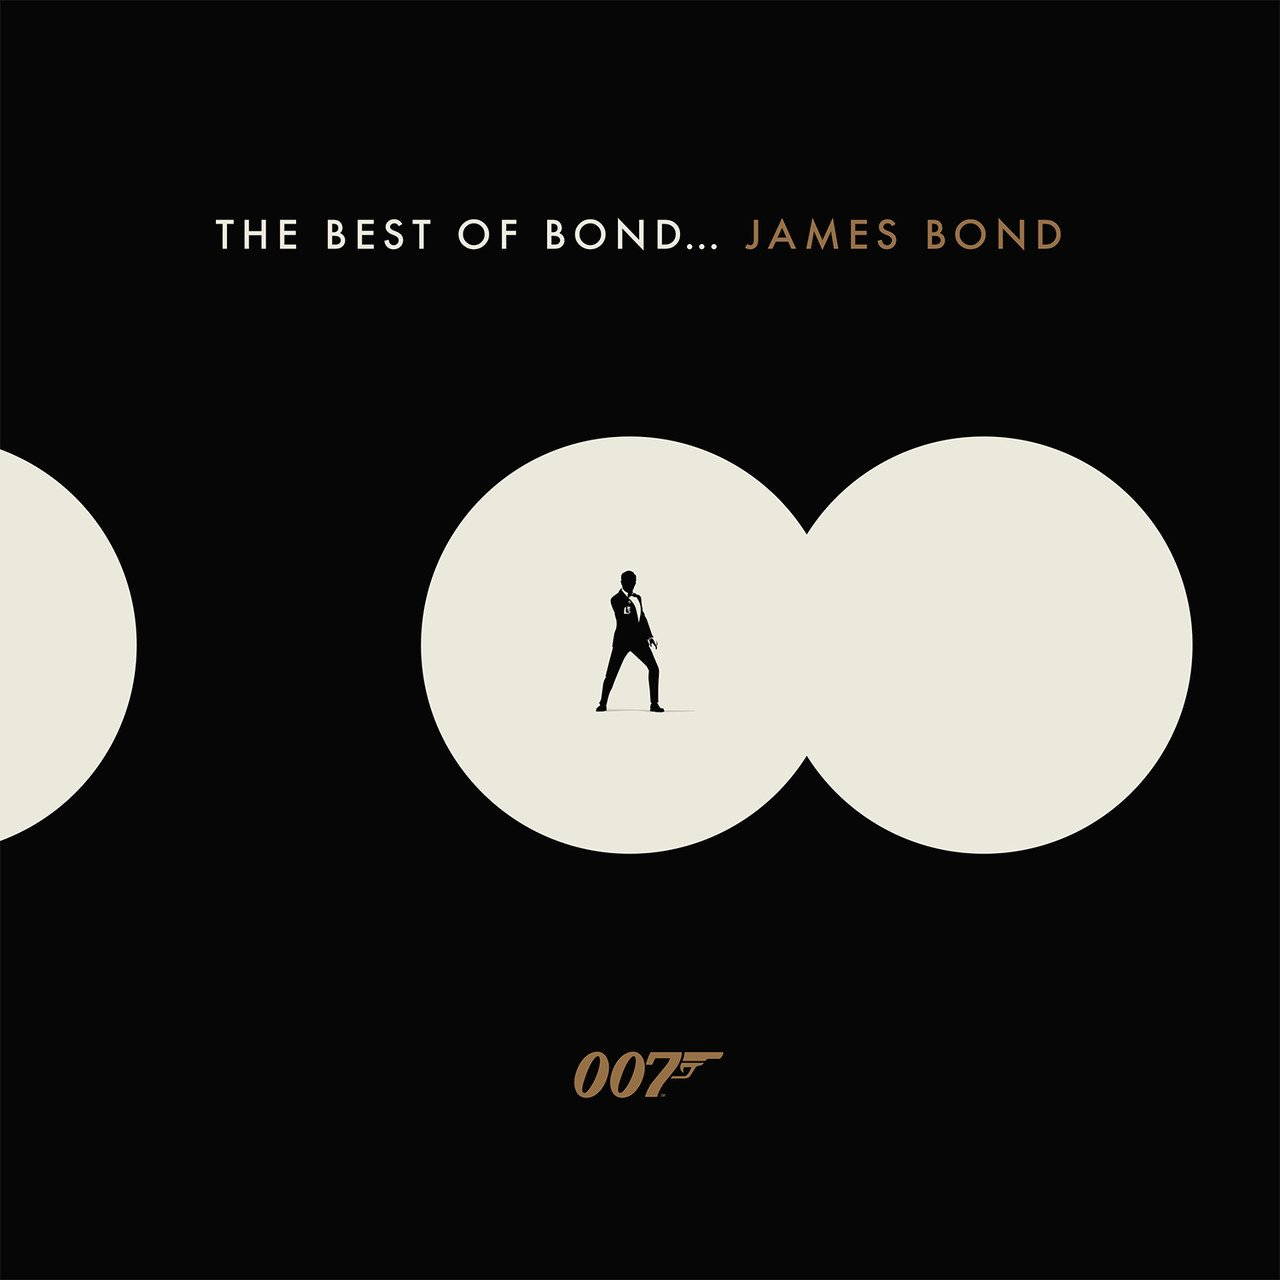 Саундтрек UME (USM) The Best Of Bond...James Bond дневники лоры палны тру крайм истории самых резонансных убийств